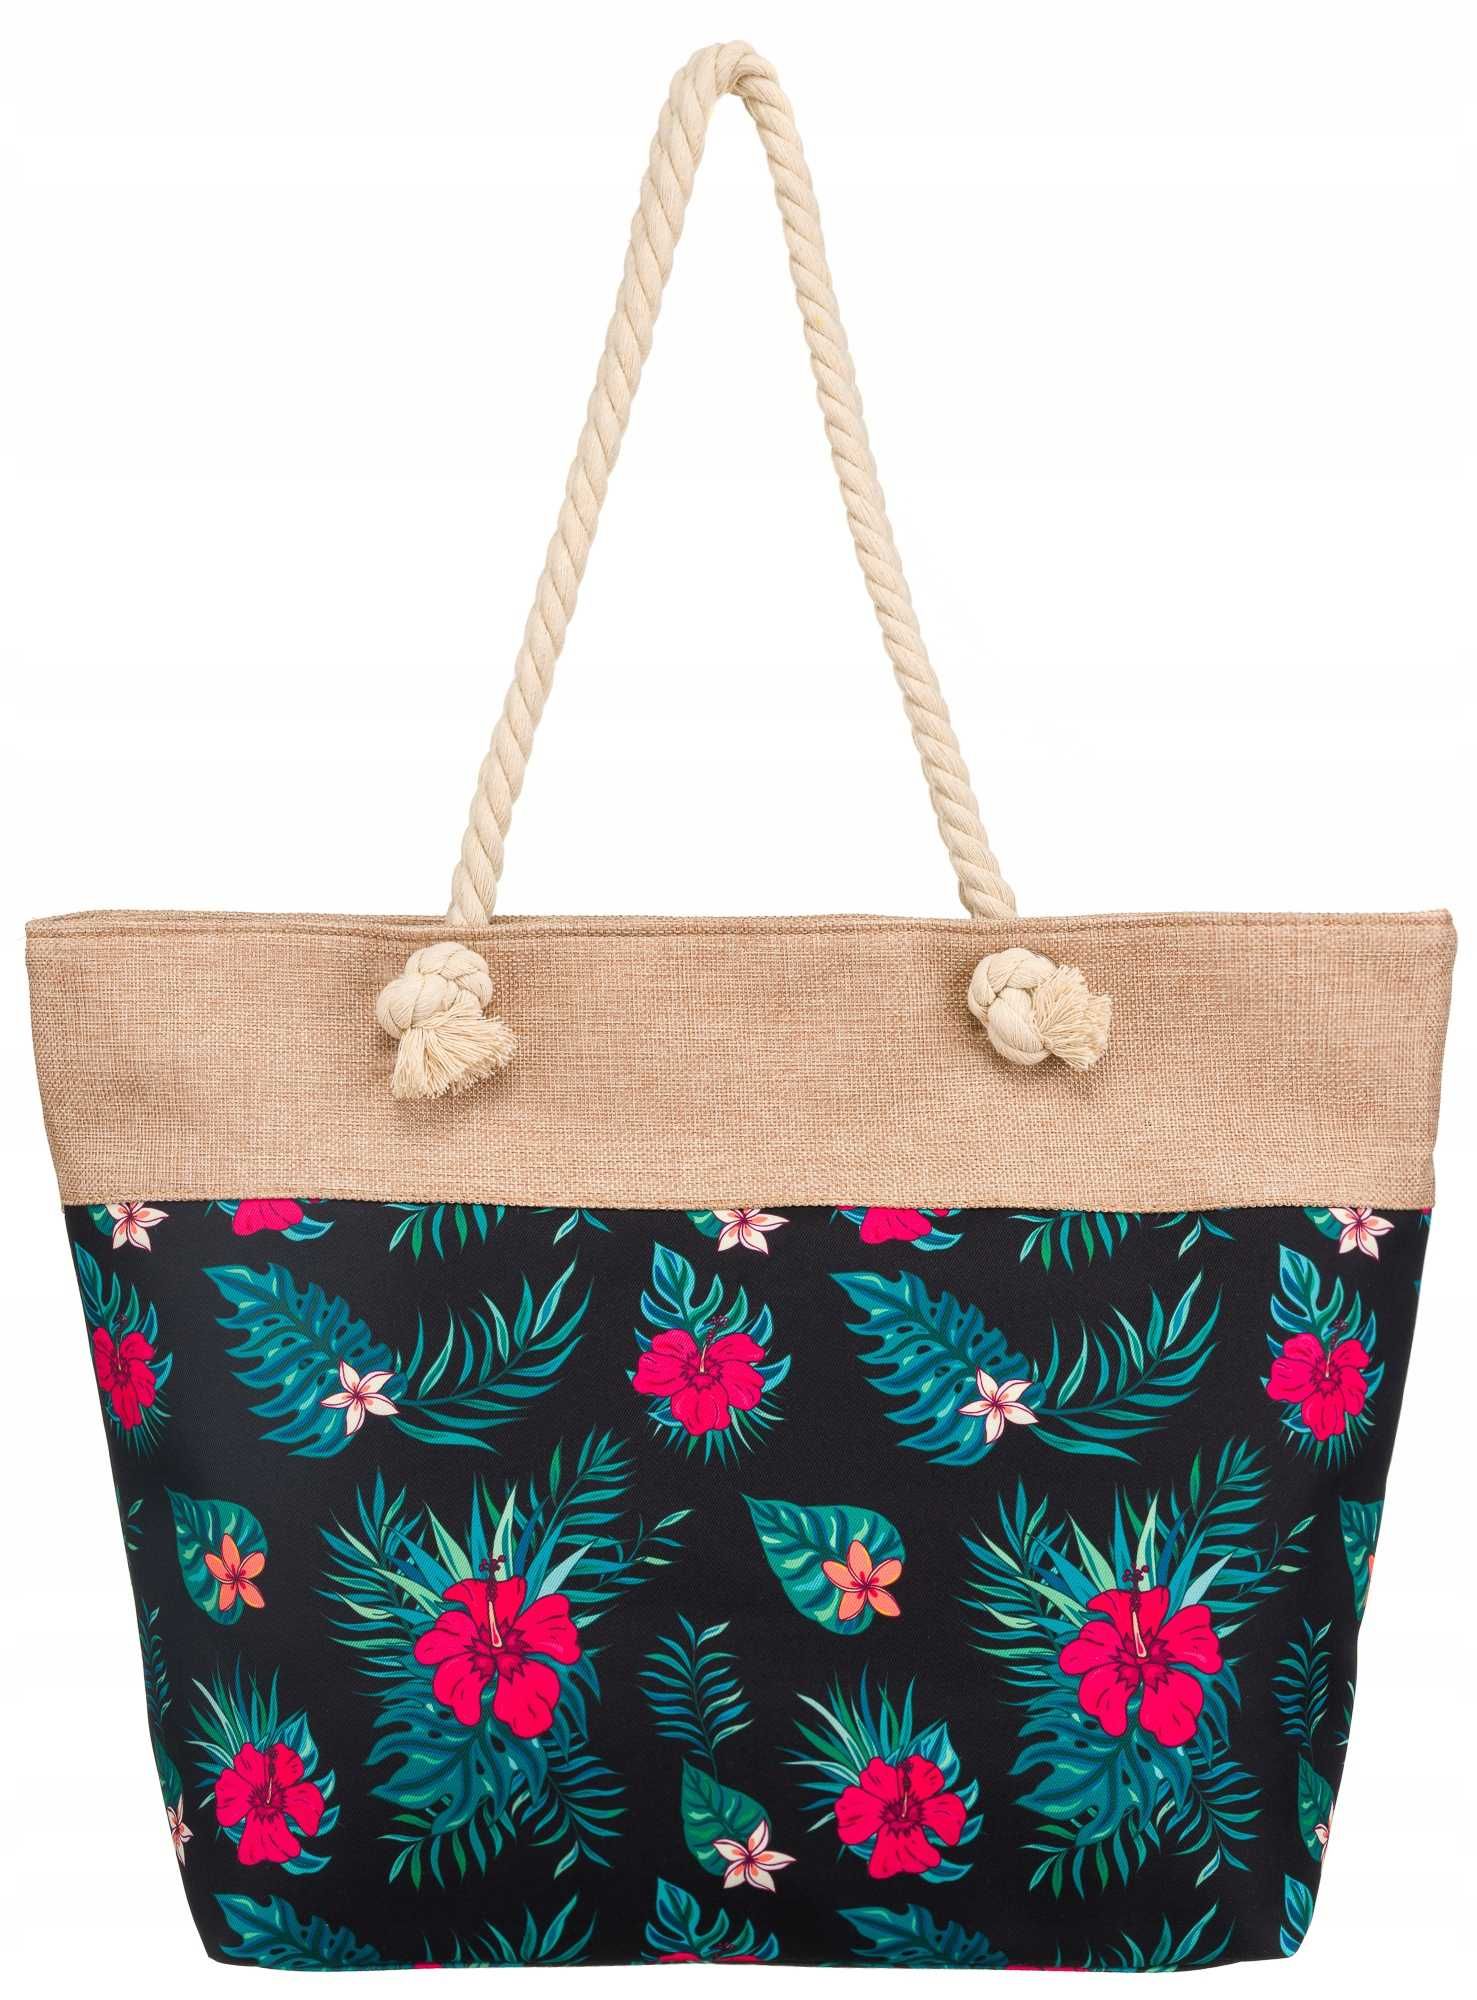 Torba damska wiosenna letnia zakupowa shopper bag w kwiaty wzory A4